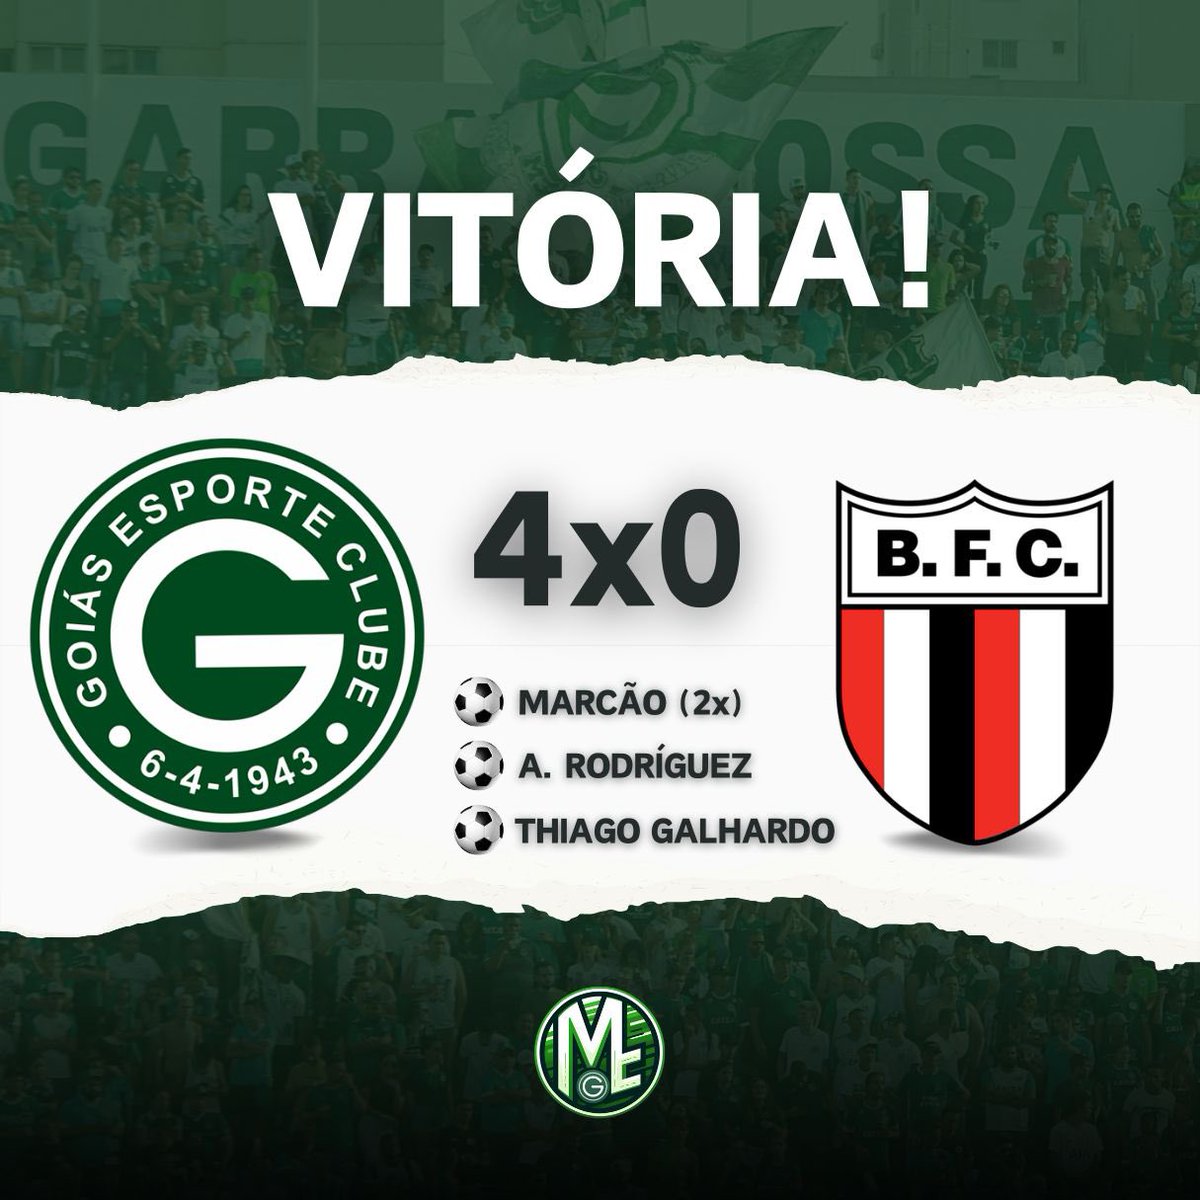 VITÓRIA! O Goiás goleou o Botafogo-SP por 4 a 0 com gols de Marcão (2x), Angello Rodriguez e Thiago Galhardo. O próximo jogo será contra o Cuiabá, na quinta-feira (23), pelo jogo da volta da terceira fase da Copa do Brasil. 🗣️ A nossa voz não pode acabar!